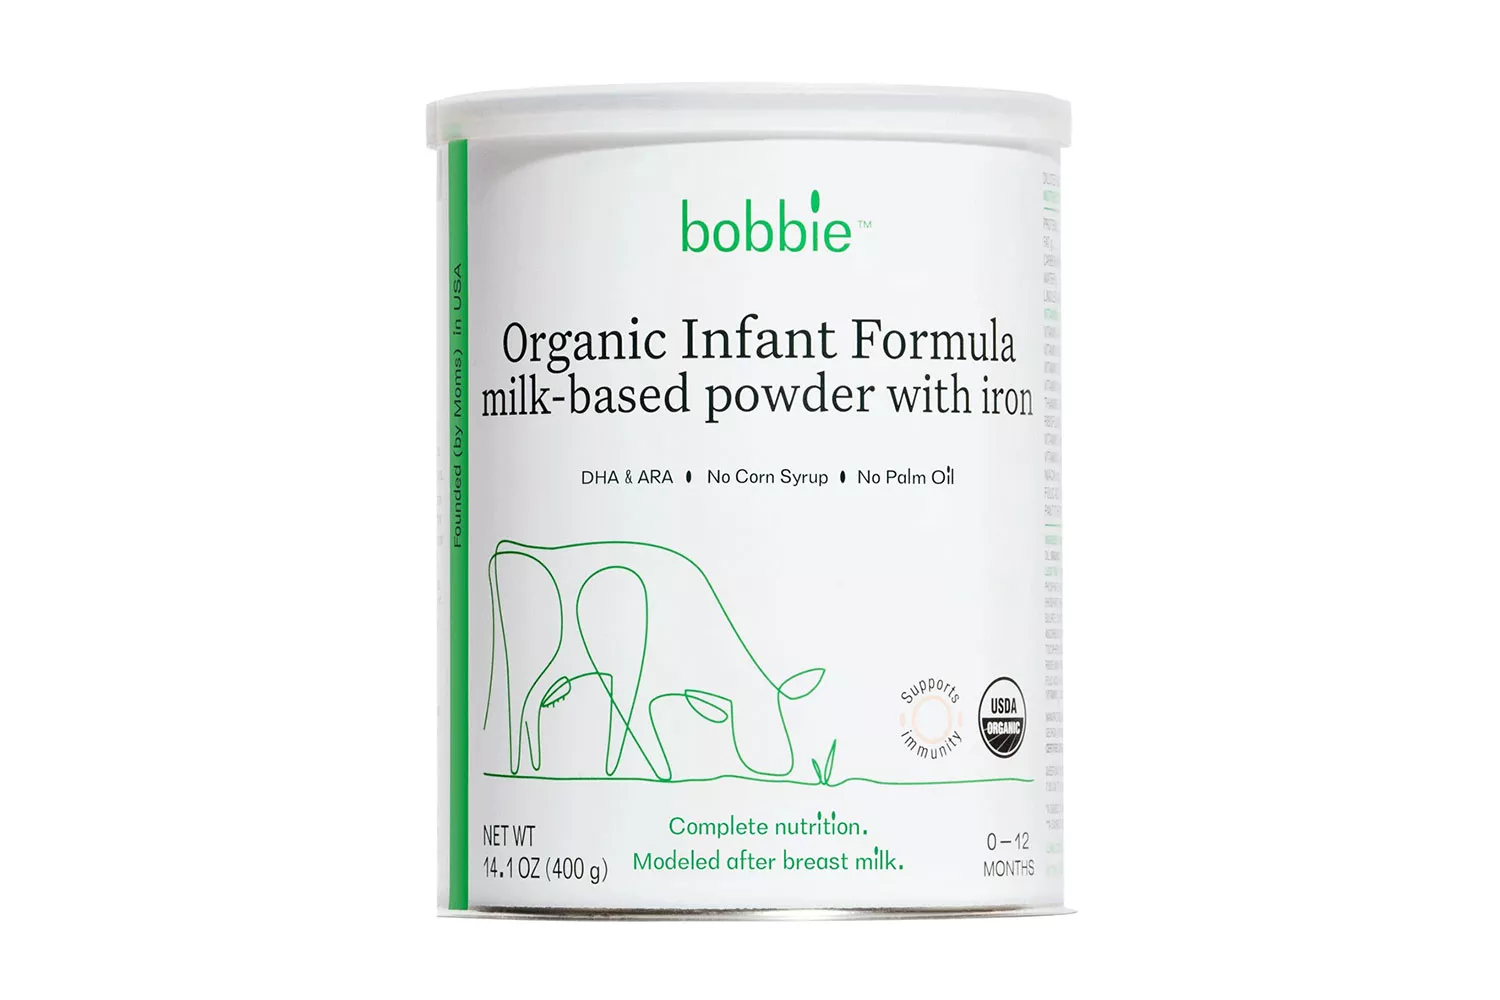 Bobbie Organic Infant Formula Milk-Based Powder with Iron